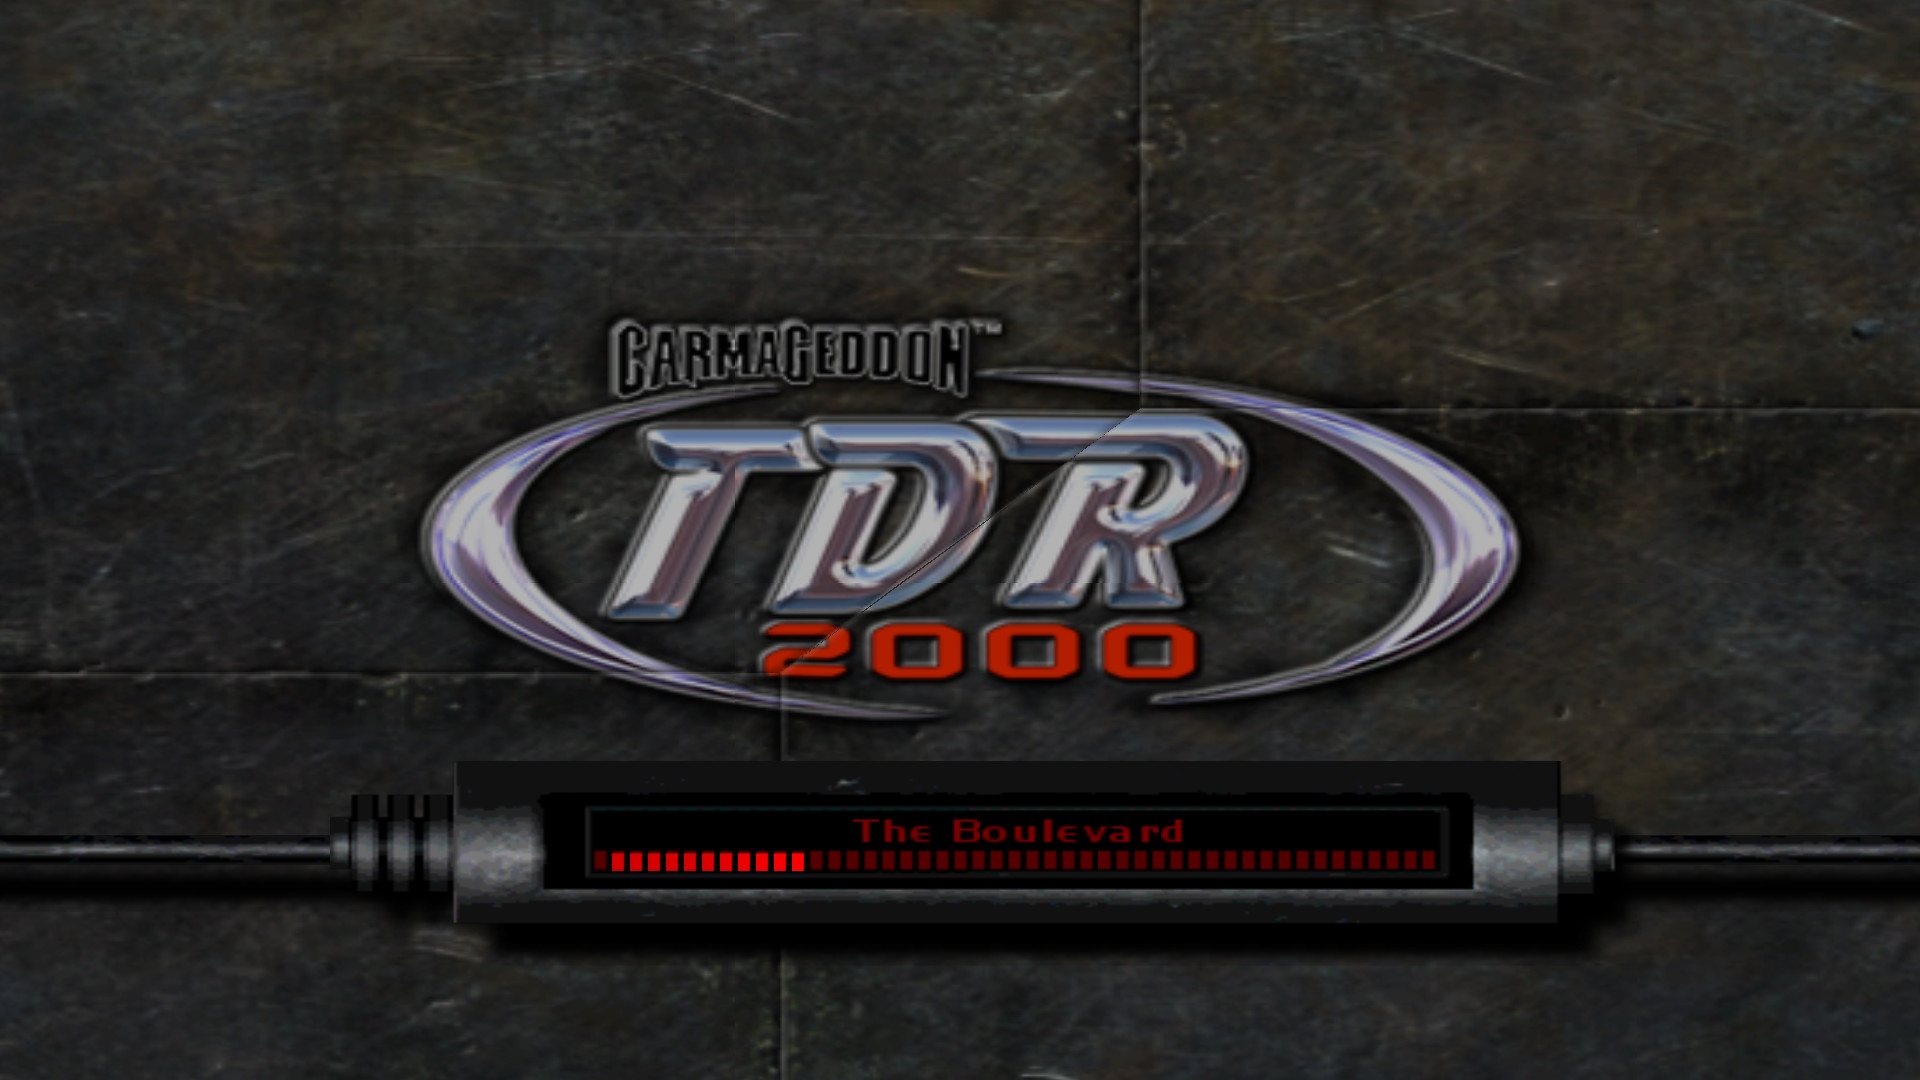 Carmageddon TDR 2000 Steam Gift 3.13$